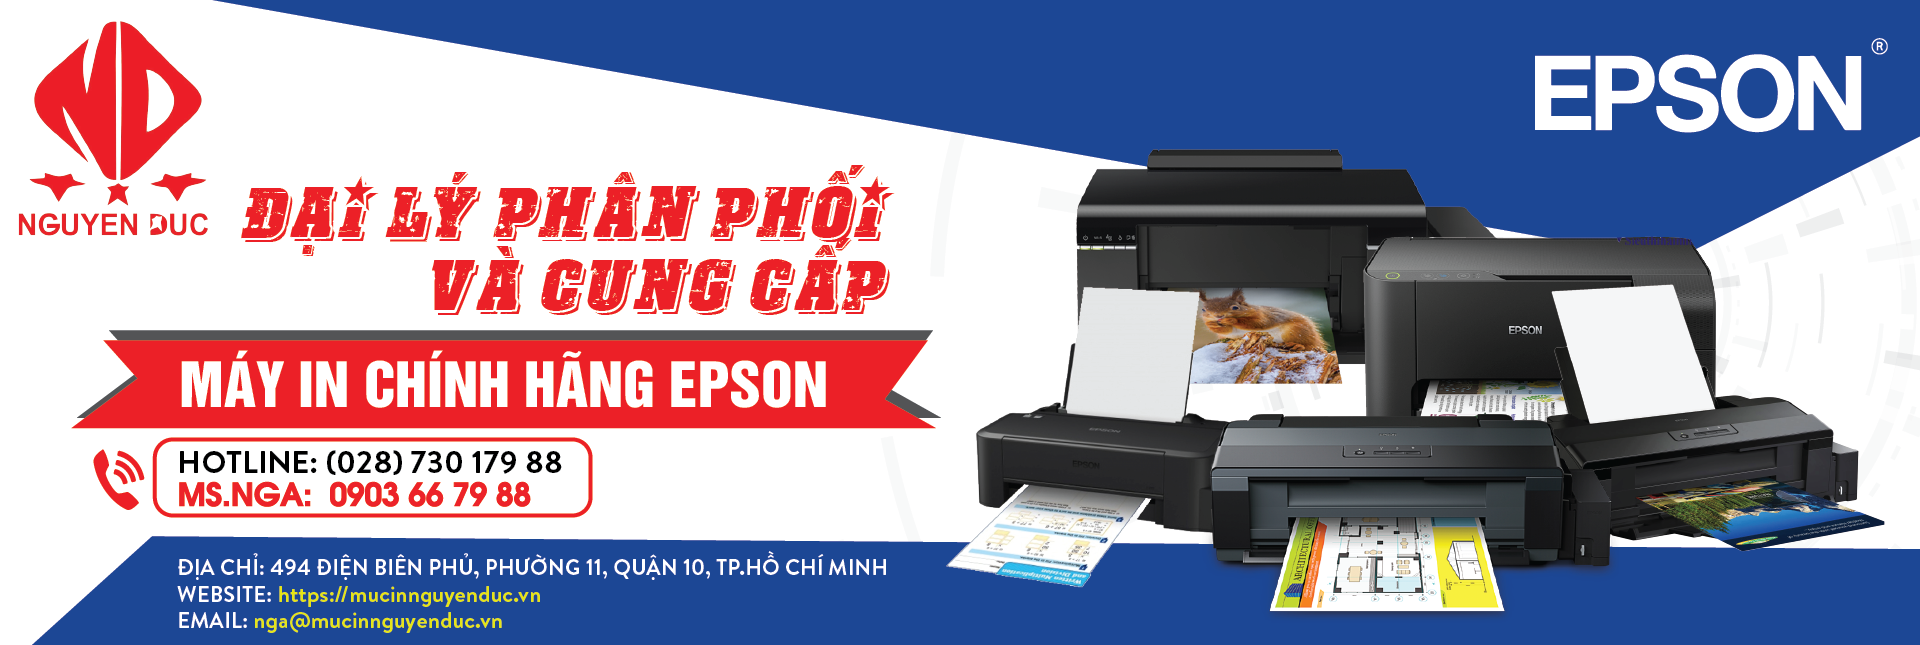 Đại lí phân phối máy in epson LQ-310 - chính hãng, giao hàng và lắp đặt tại quận 6, thành phố Hồ Chí Minh